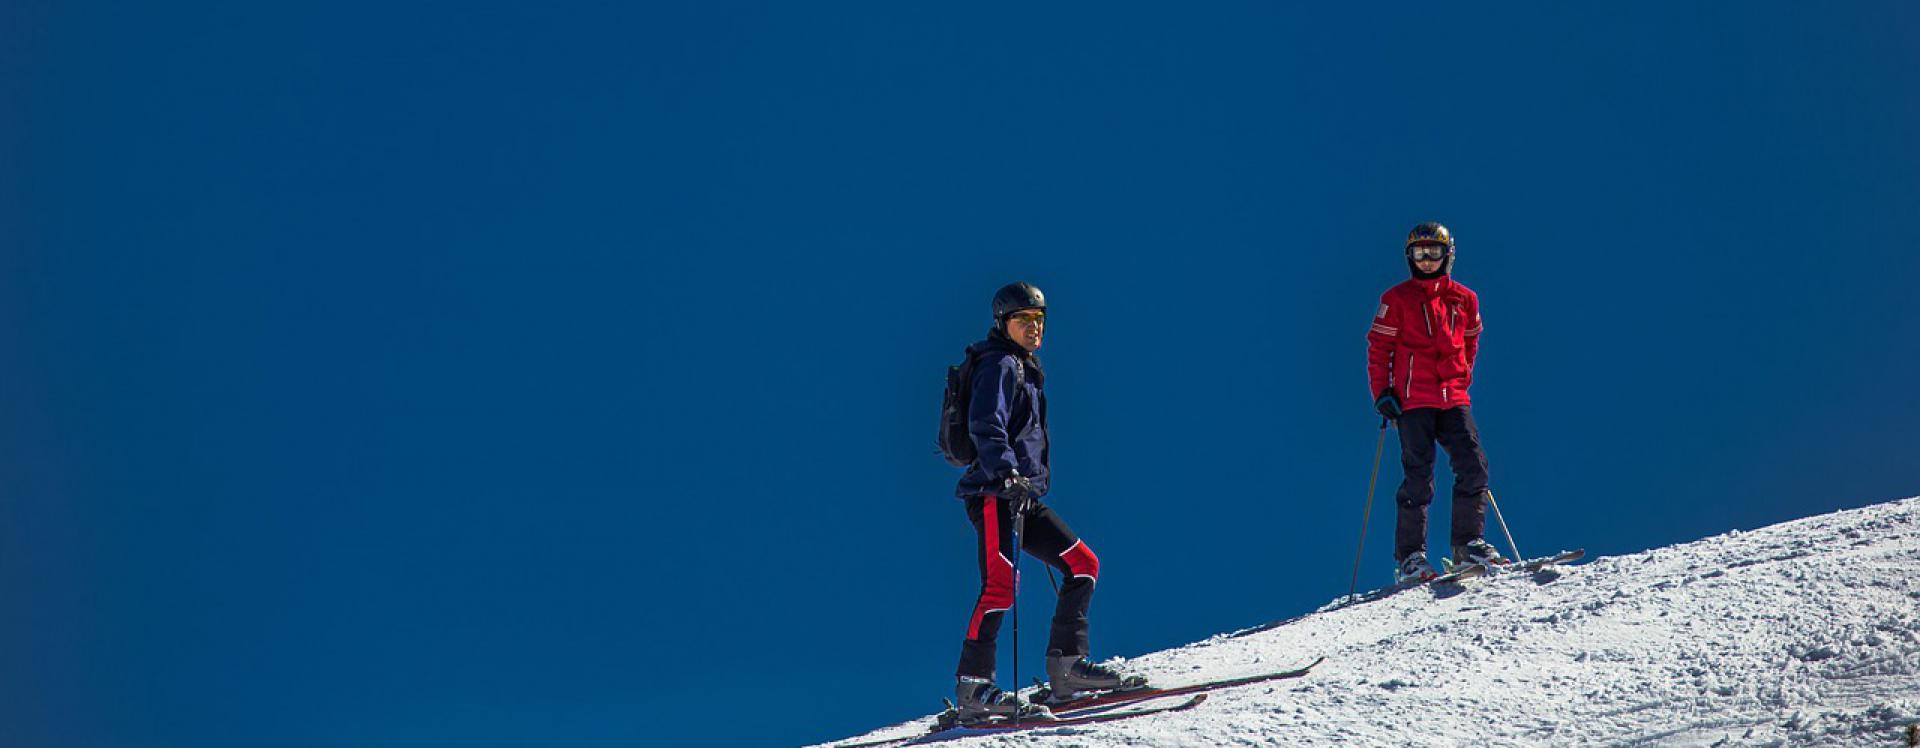 ski-tours1